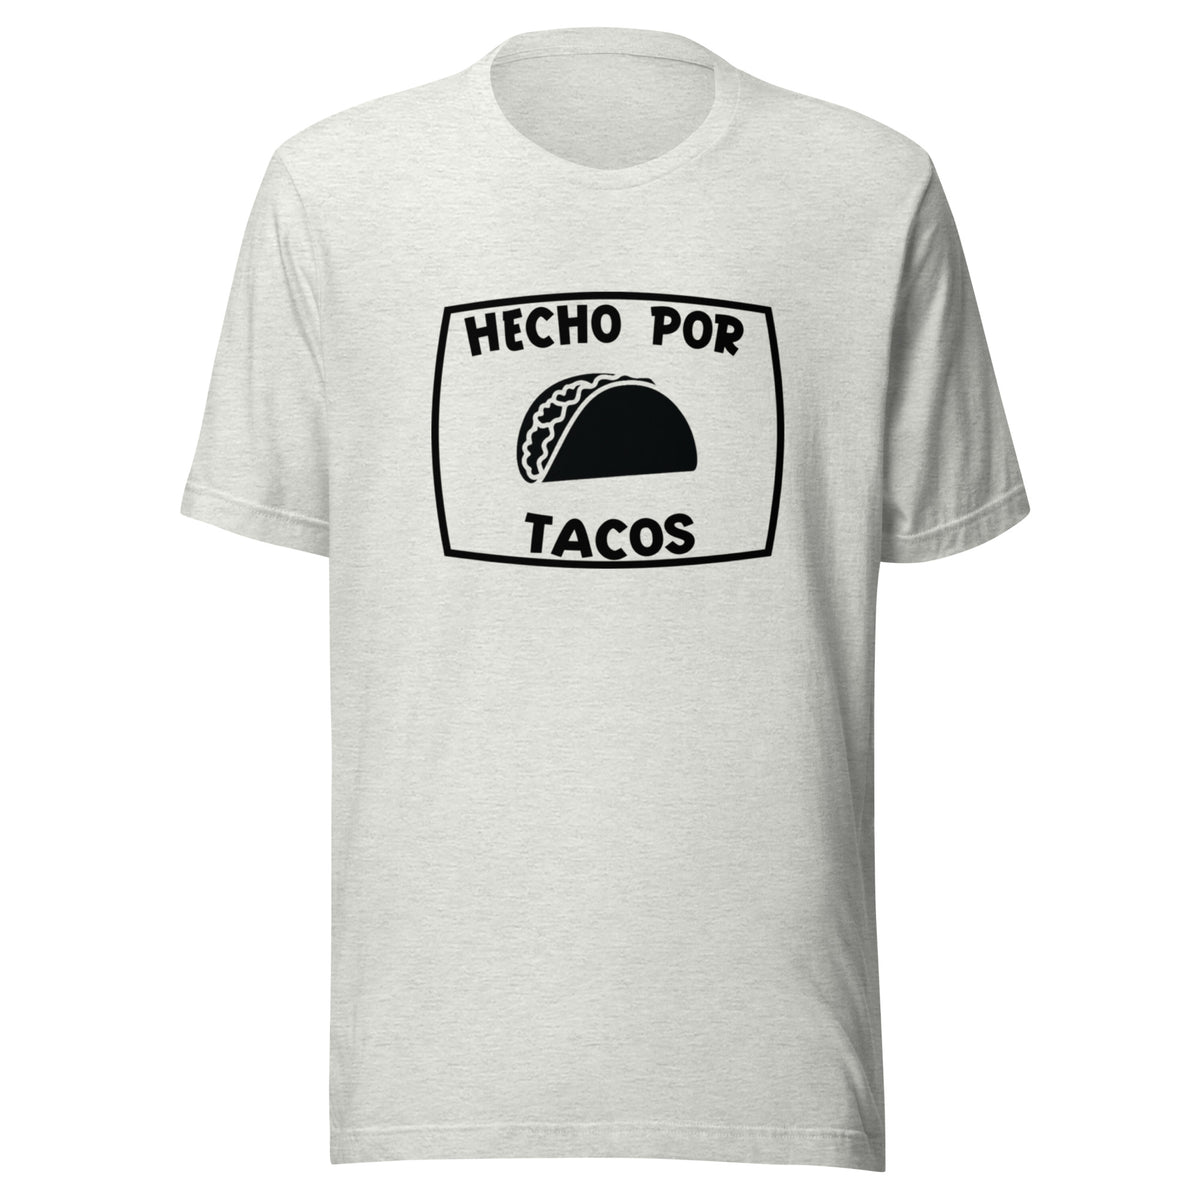 Hecho Por Tacos T-shirt (Made by tacos)